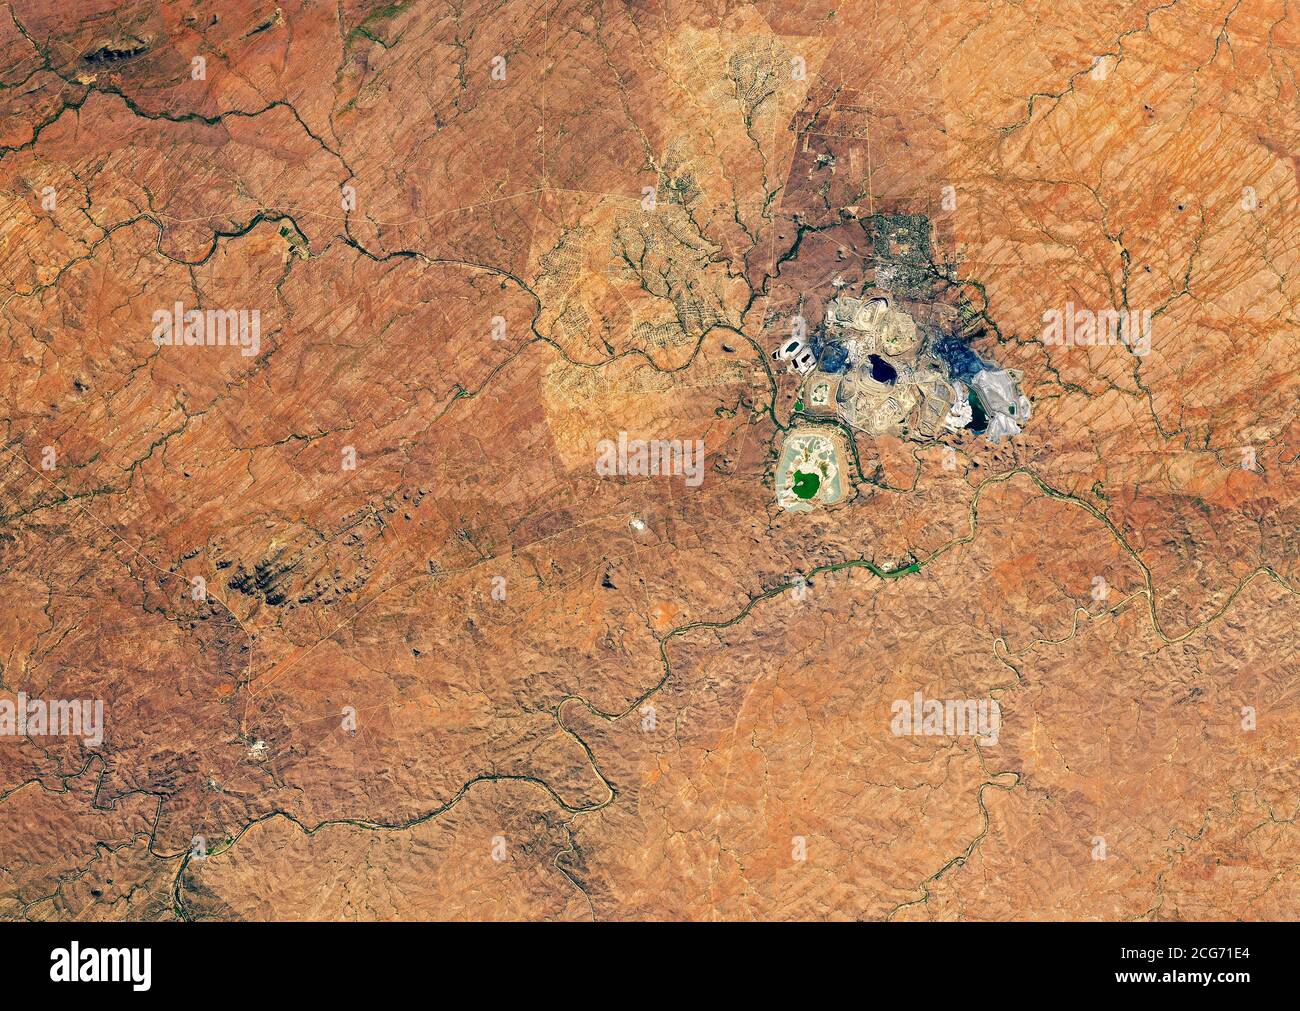 Vista aerea della miniera a cielo aperto di Palabora, la più grande miniera a cielo aperto del Sudafrica, larga quasi 2 chilometri. Foto Stock